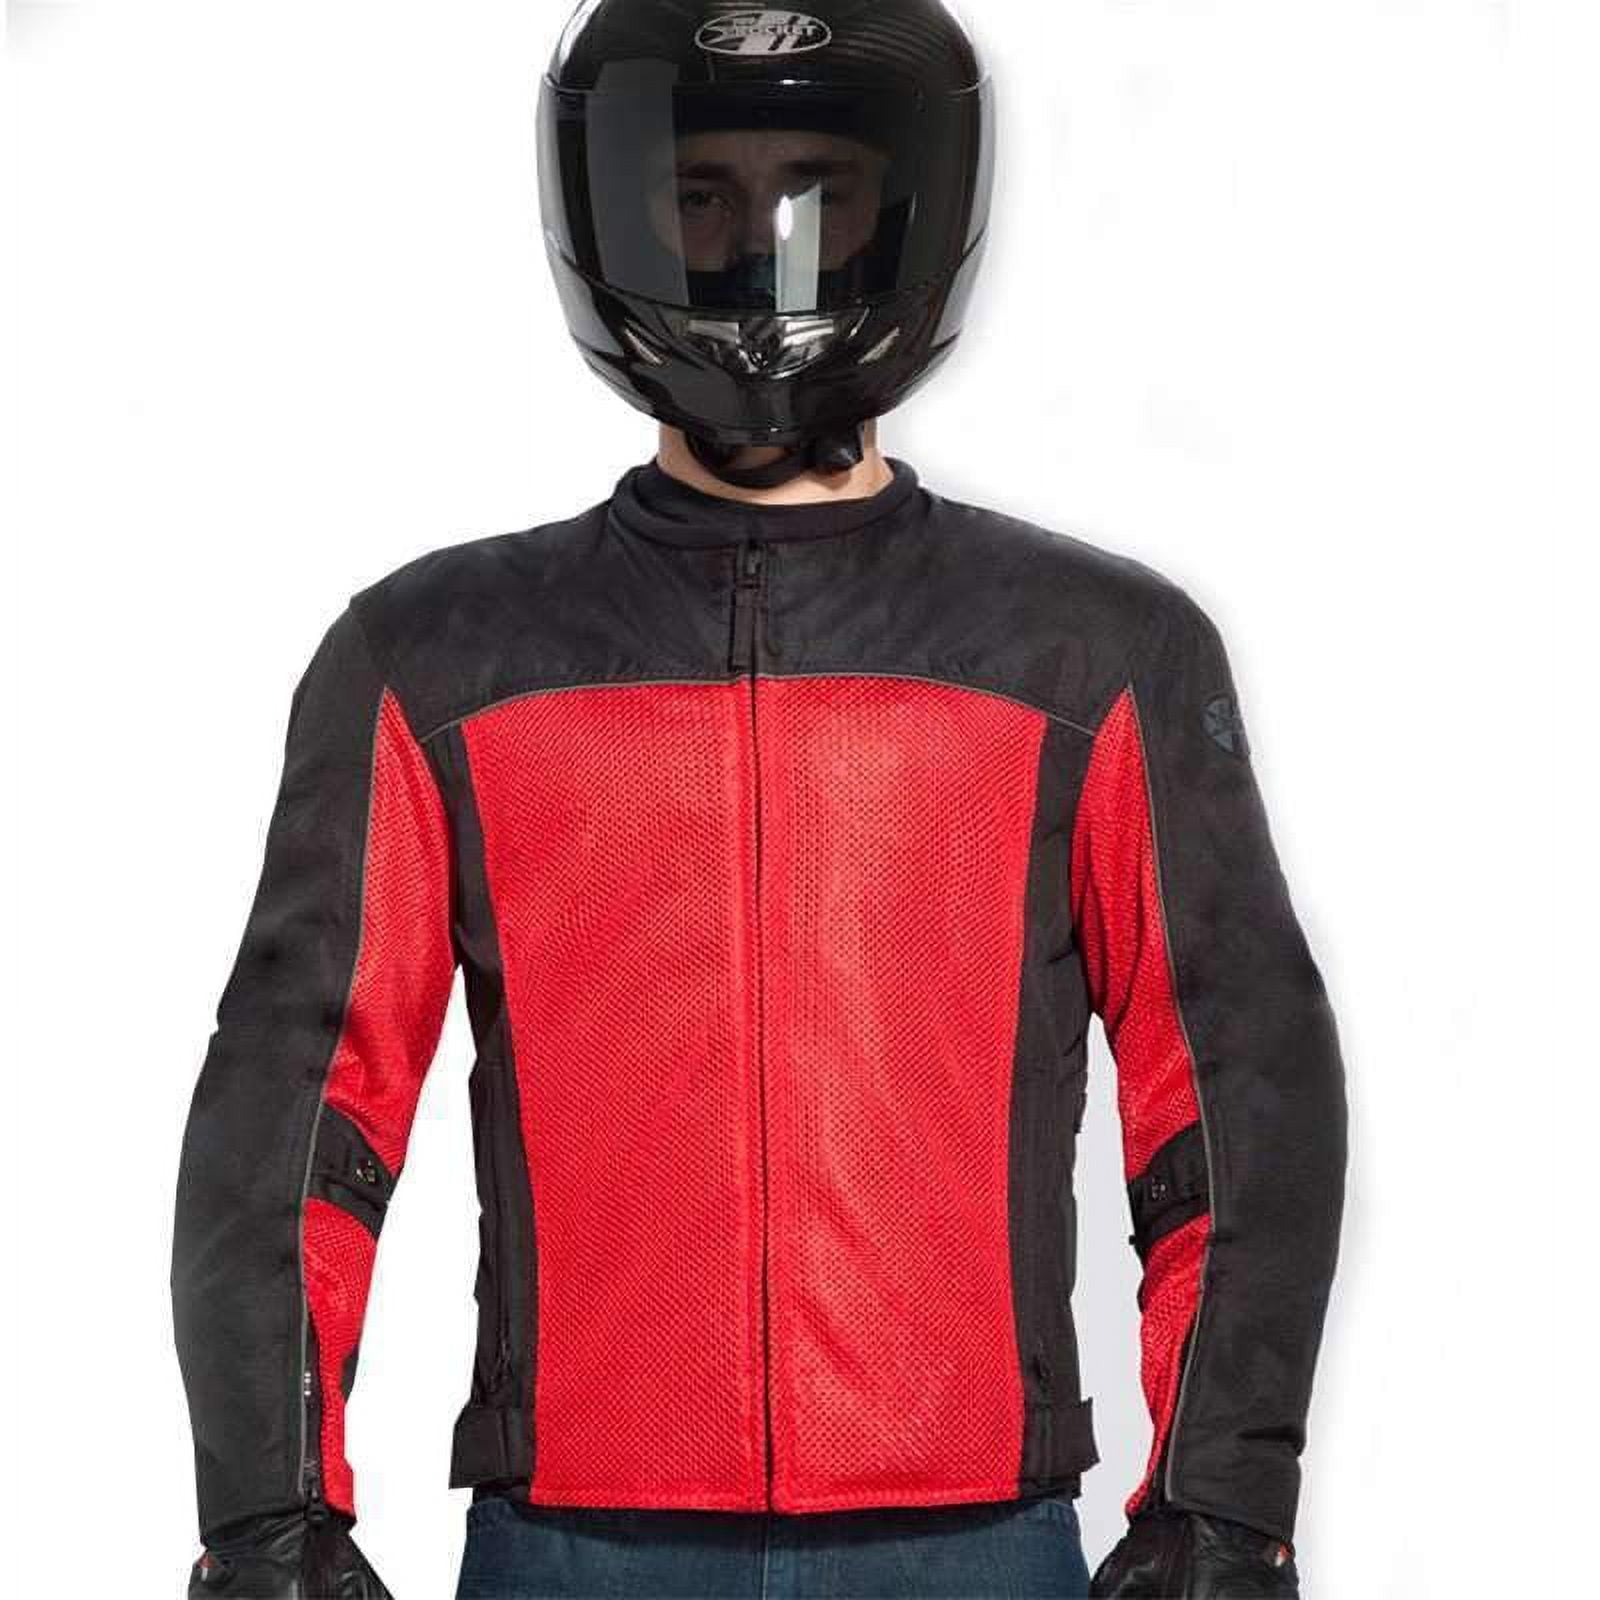 Joe Rocket Men's Velocity Mesh Motorcycle Jacket (Red, Large) Red / Black 